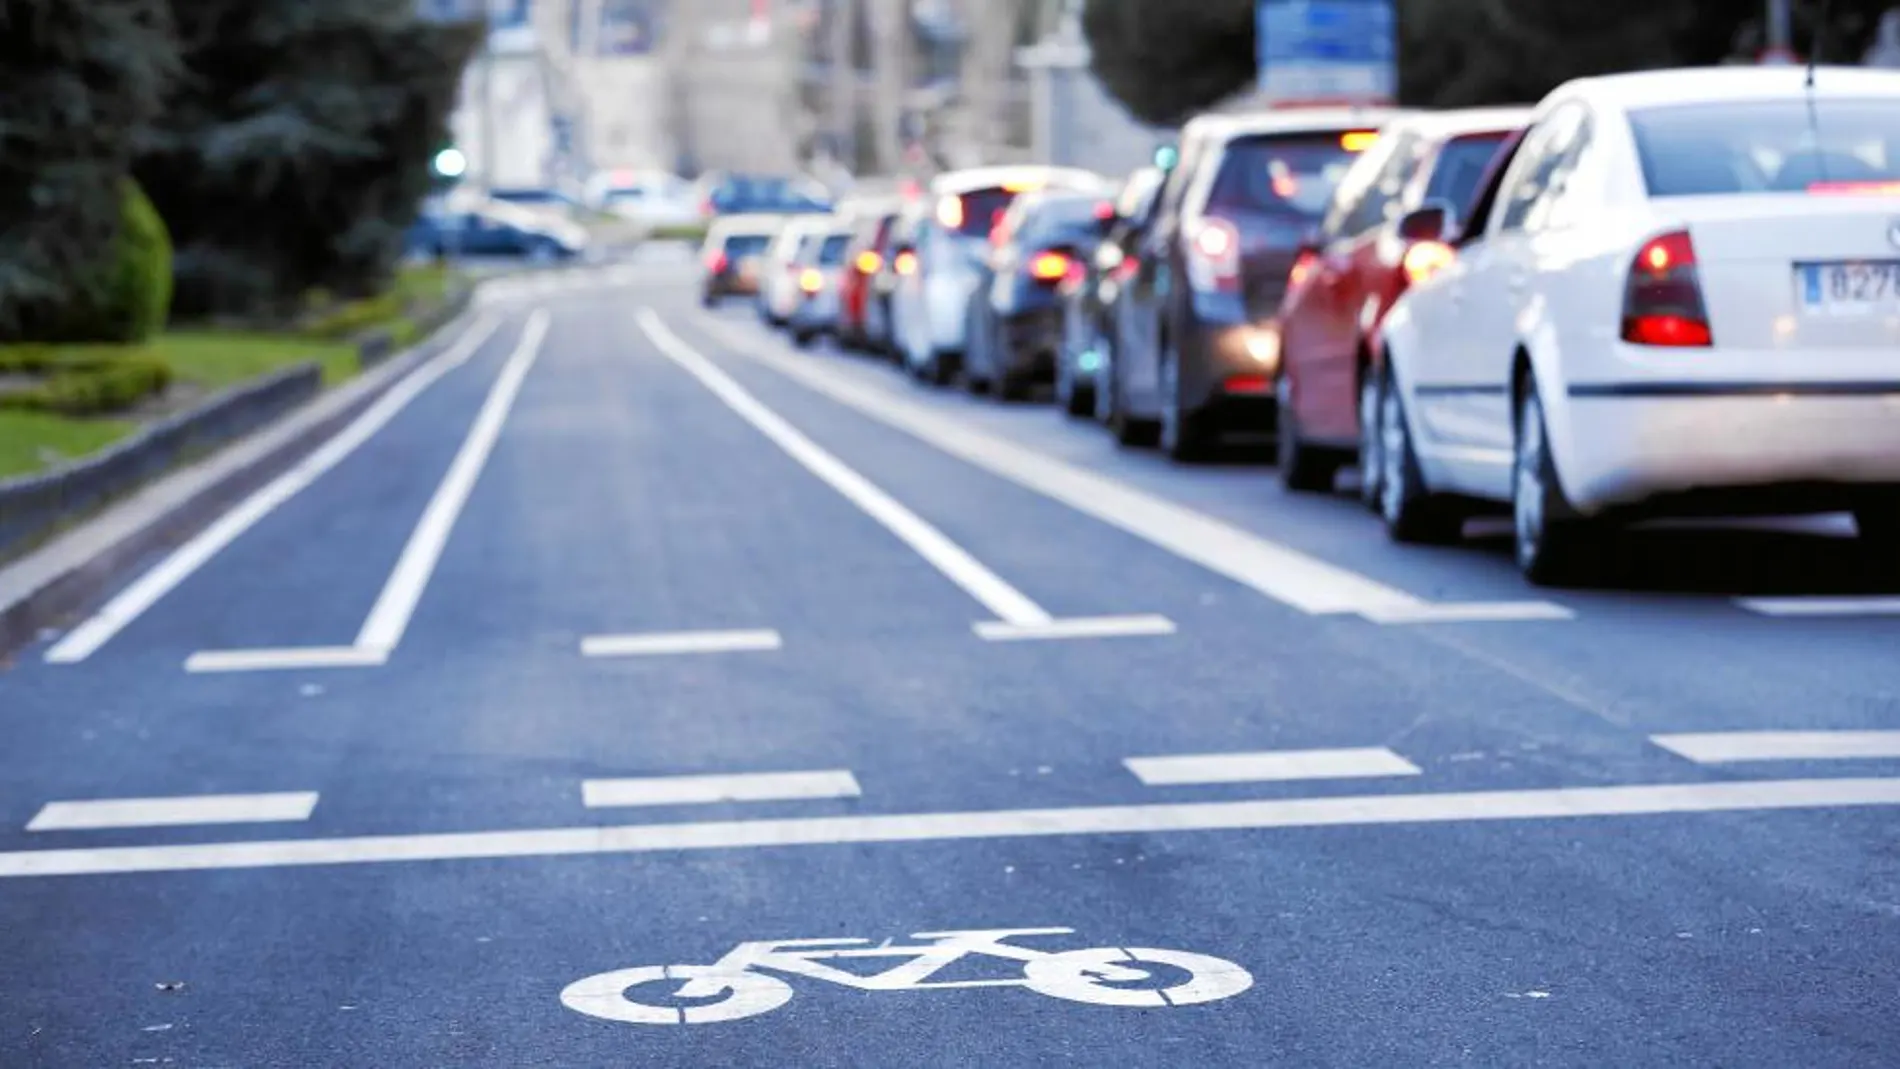 El carril bici de la calle Toledo está situado a la izquierda, «contra la lógica del tráfico», según denuncian sus usuarios. La situación genera inseguridad para los ciclistas